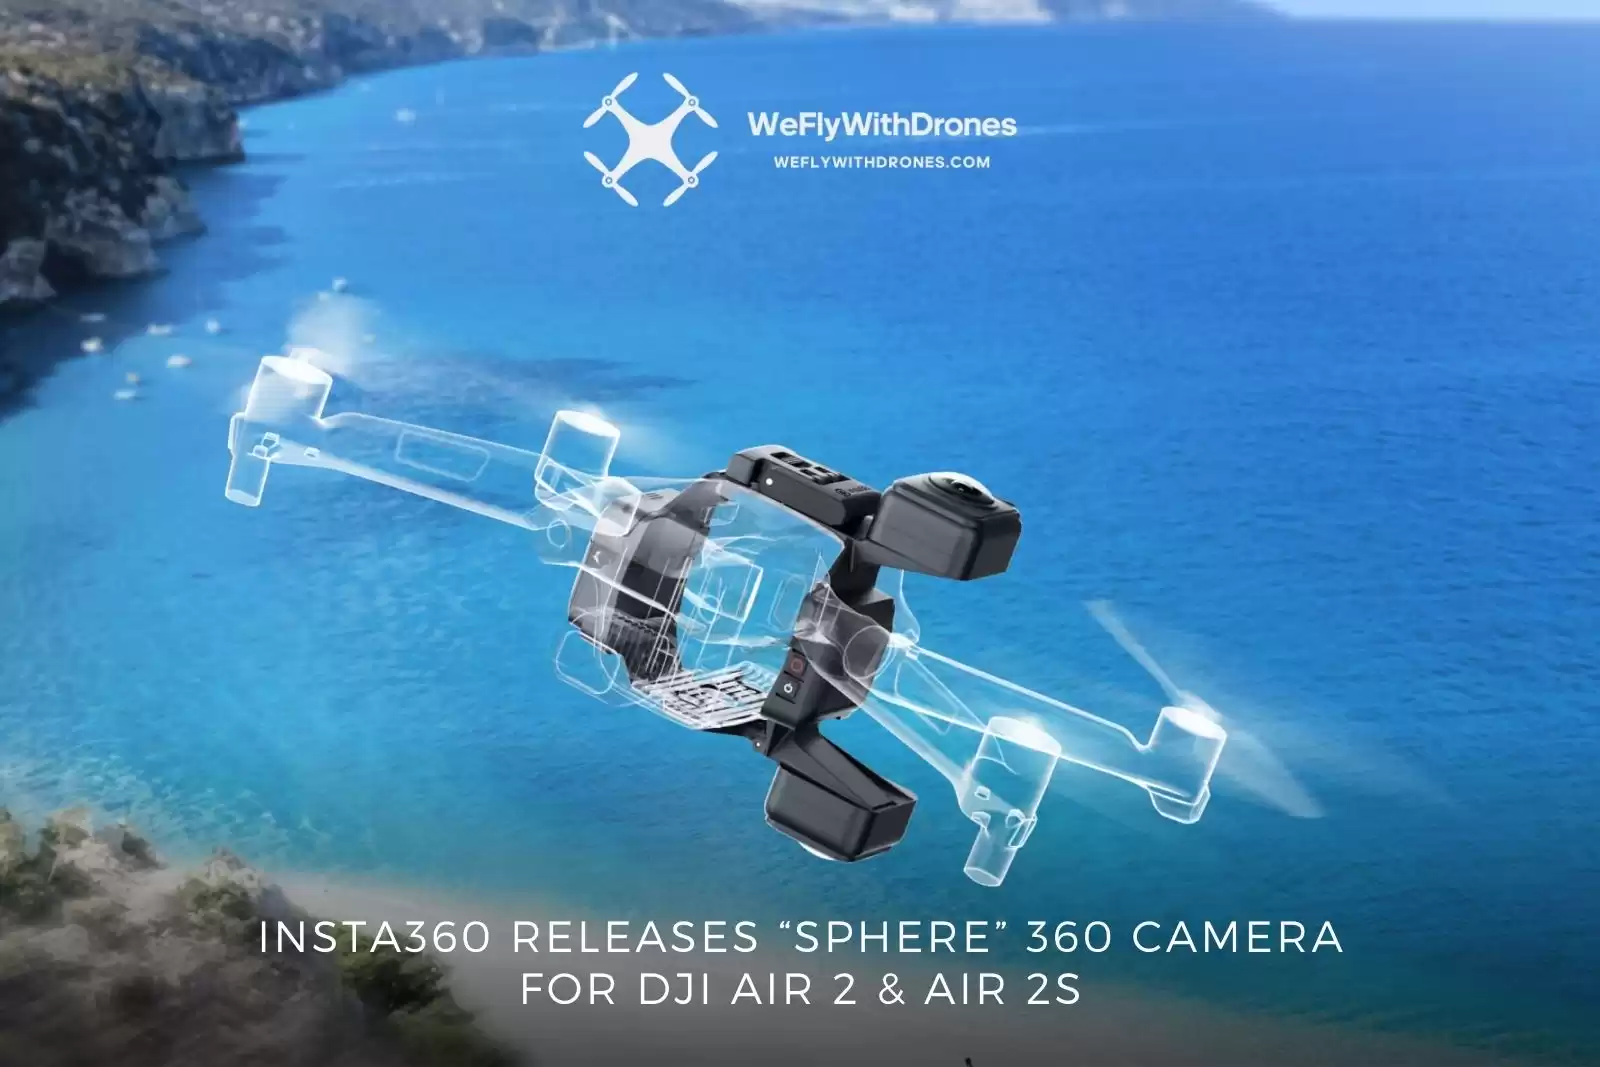 Insta360 Sphere Testbericht: Unsichtbare Drohne 360 Kamera